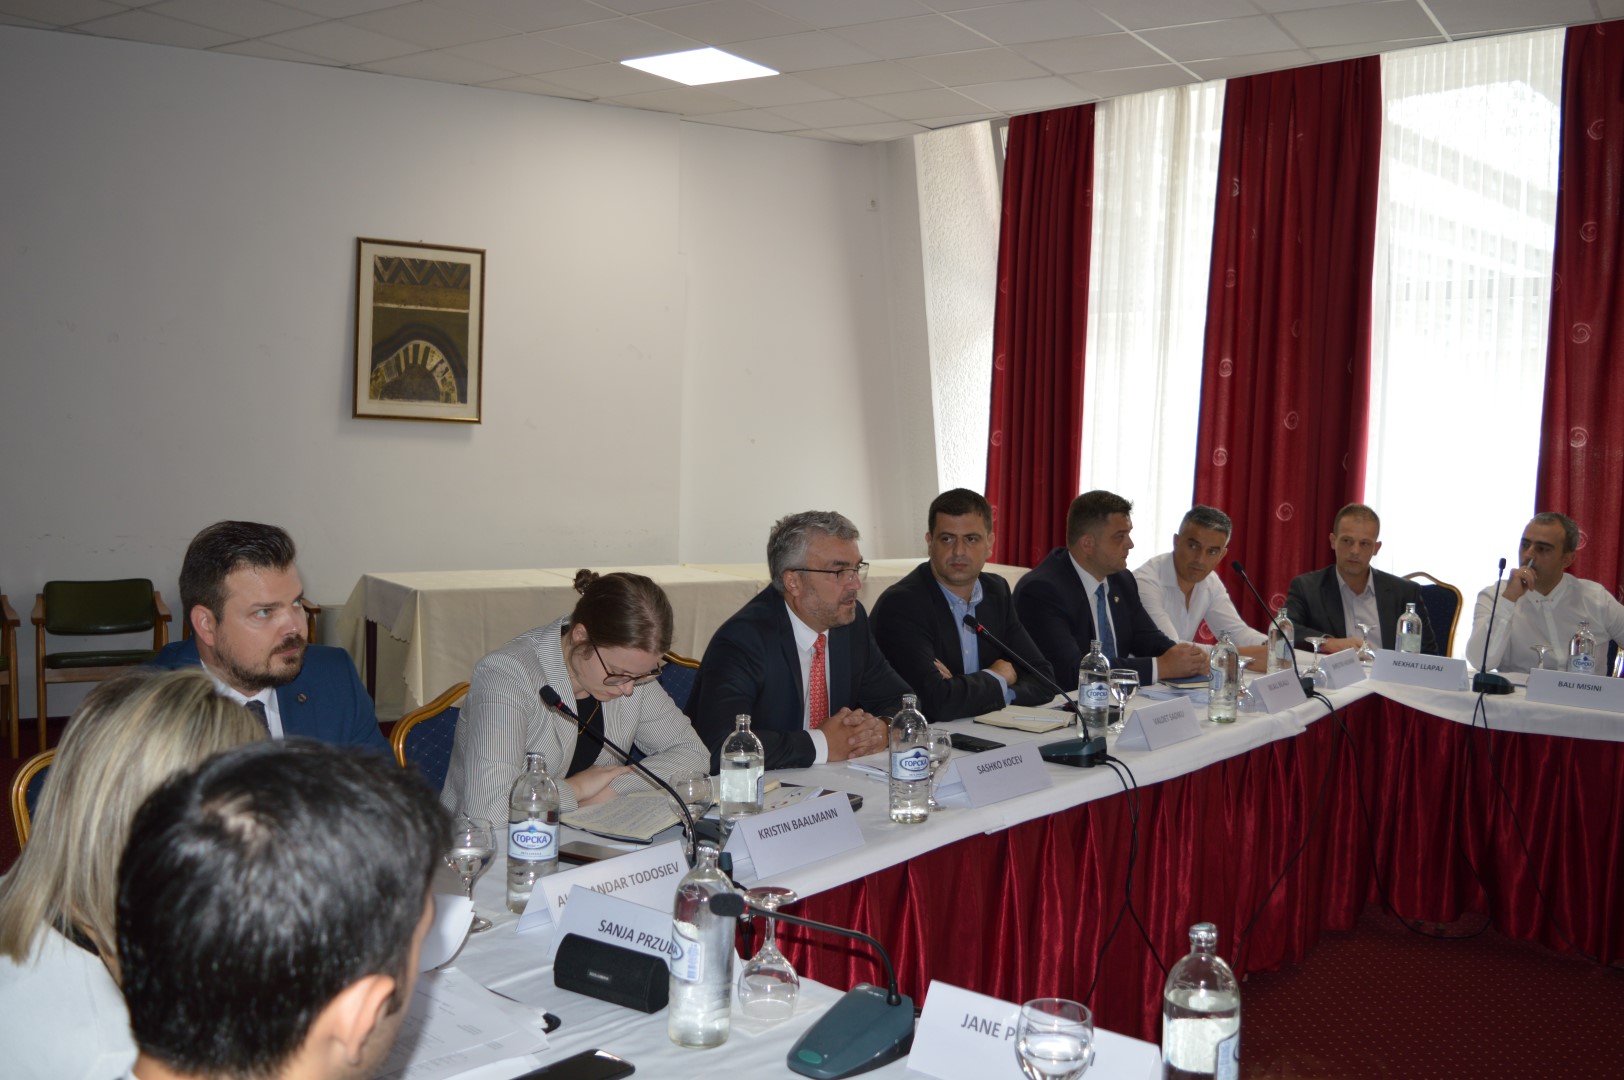 11 -13 September 2019 – MARRI Legal Reform Meeting in Struga